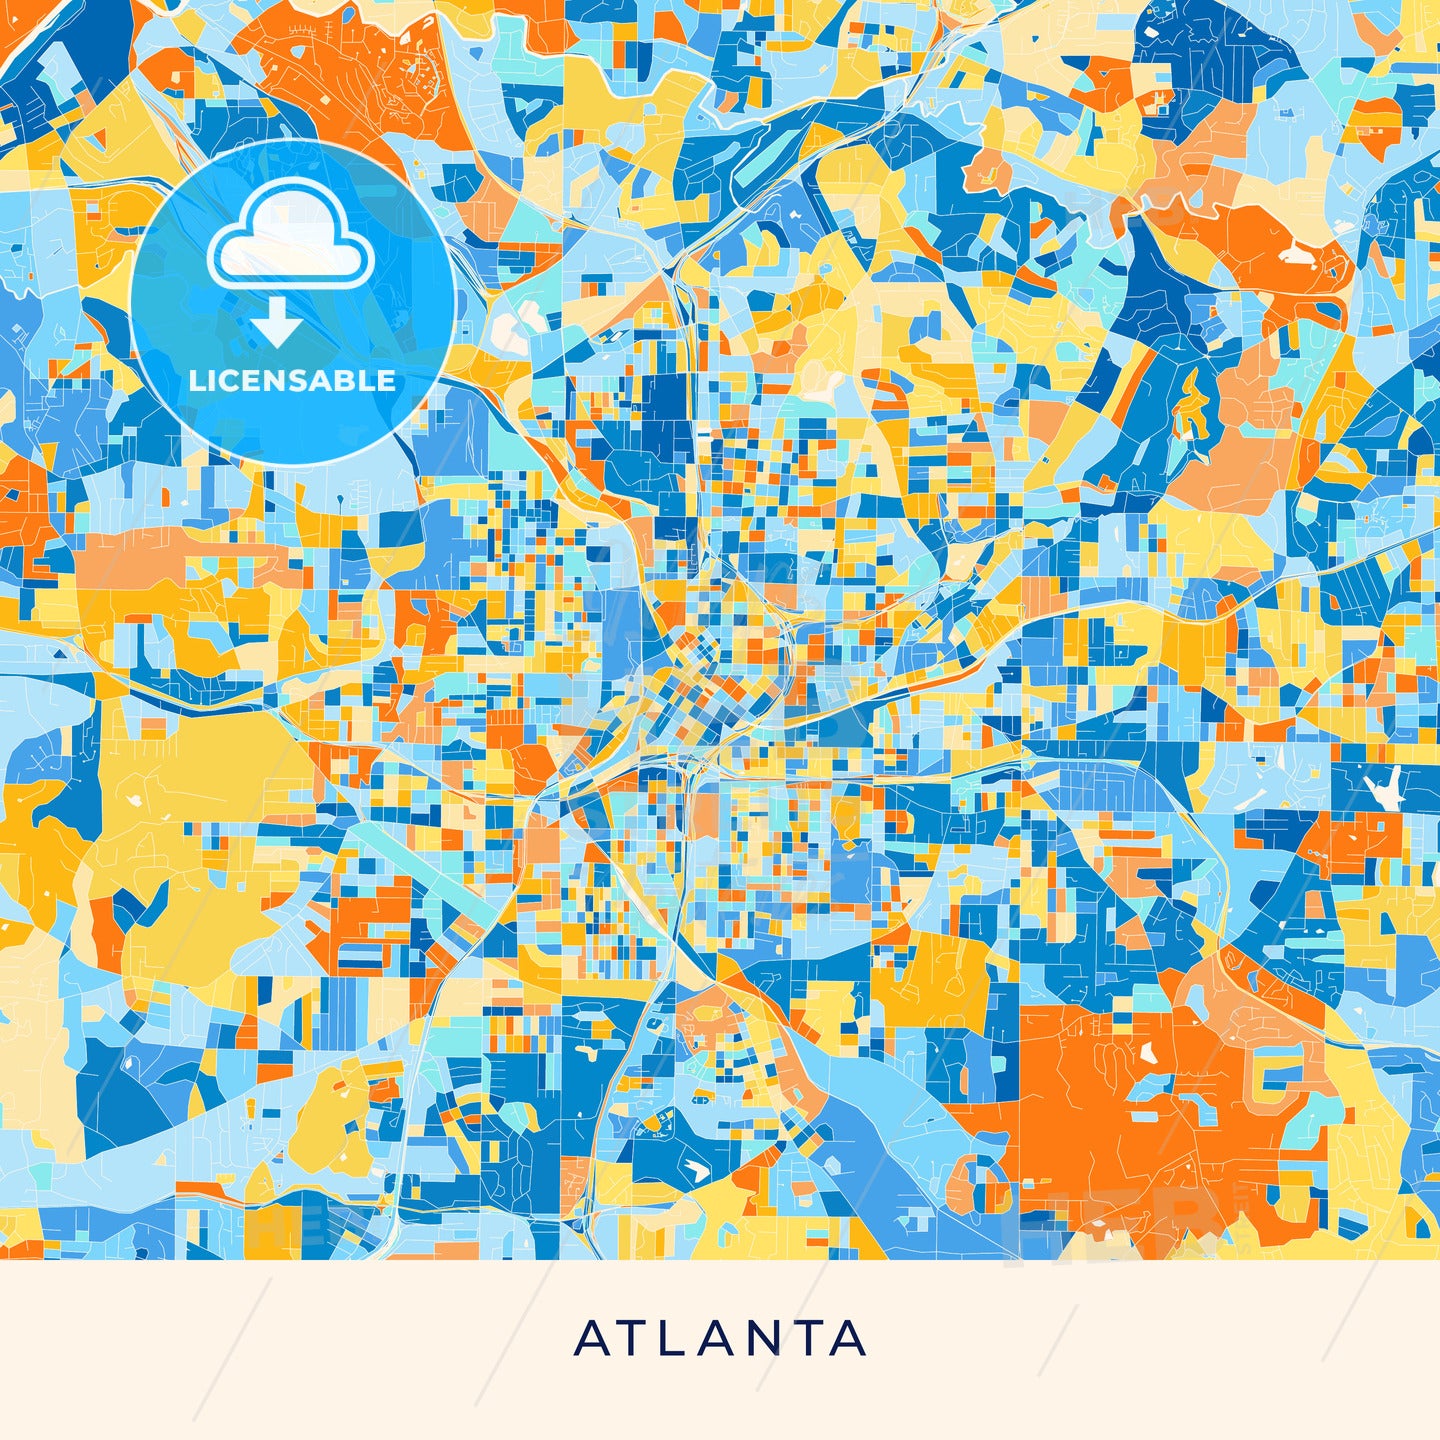 Atlanta colorful map poster template